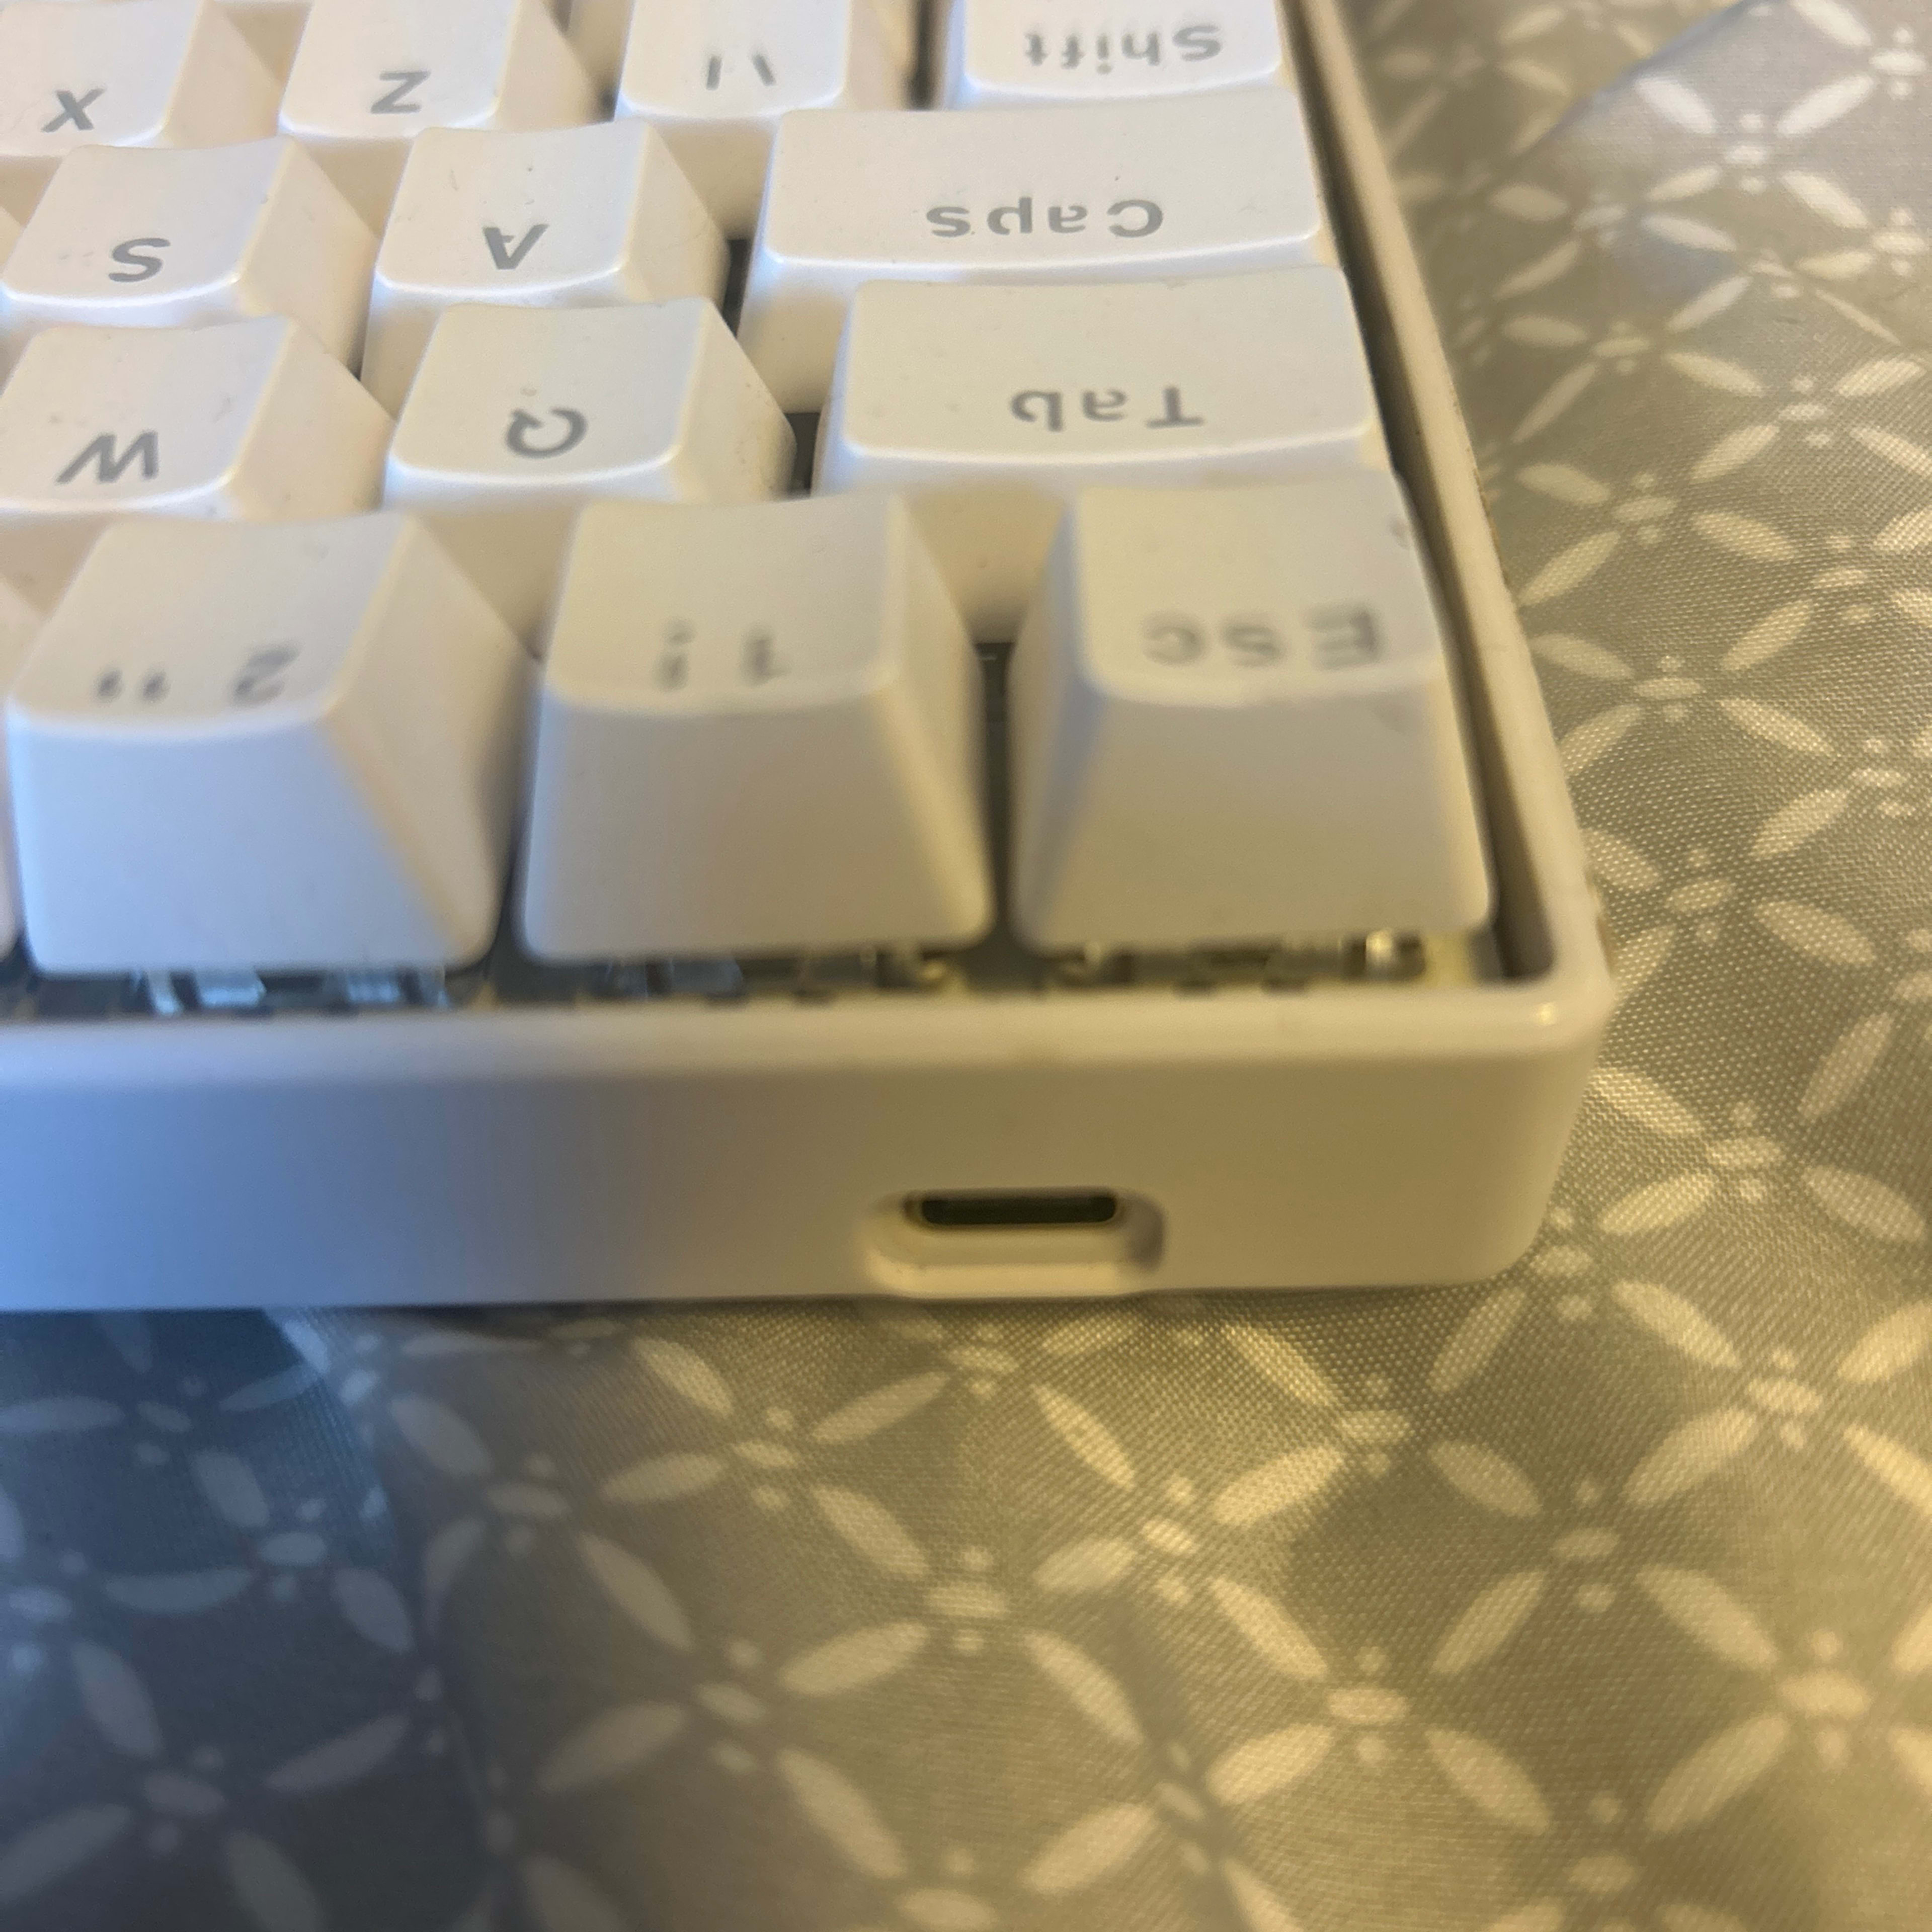 White 60% keyboard